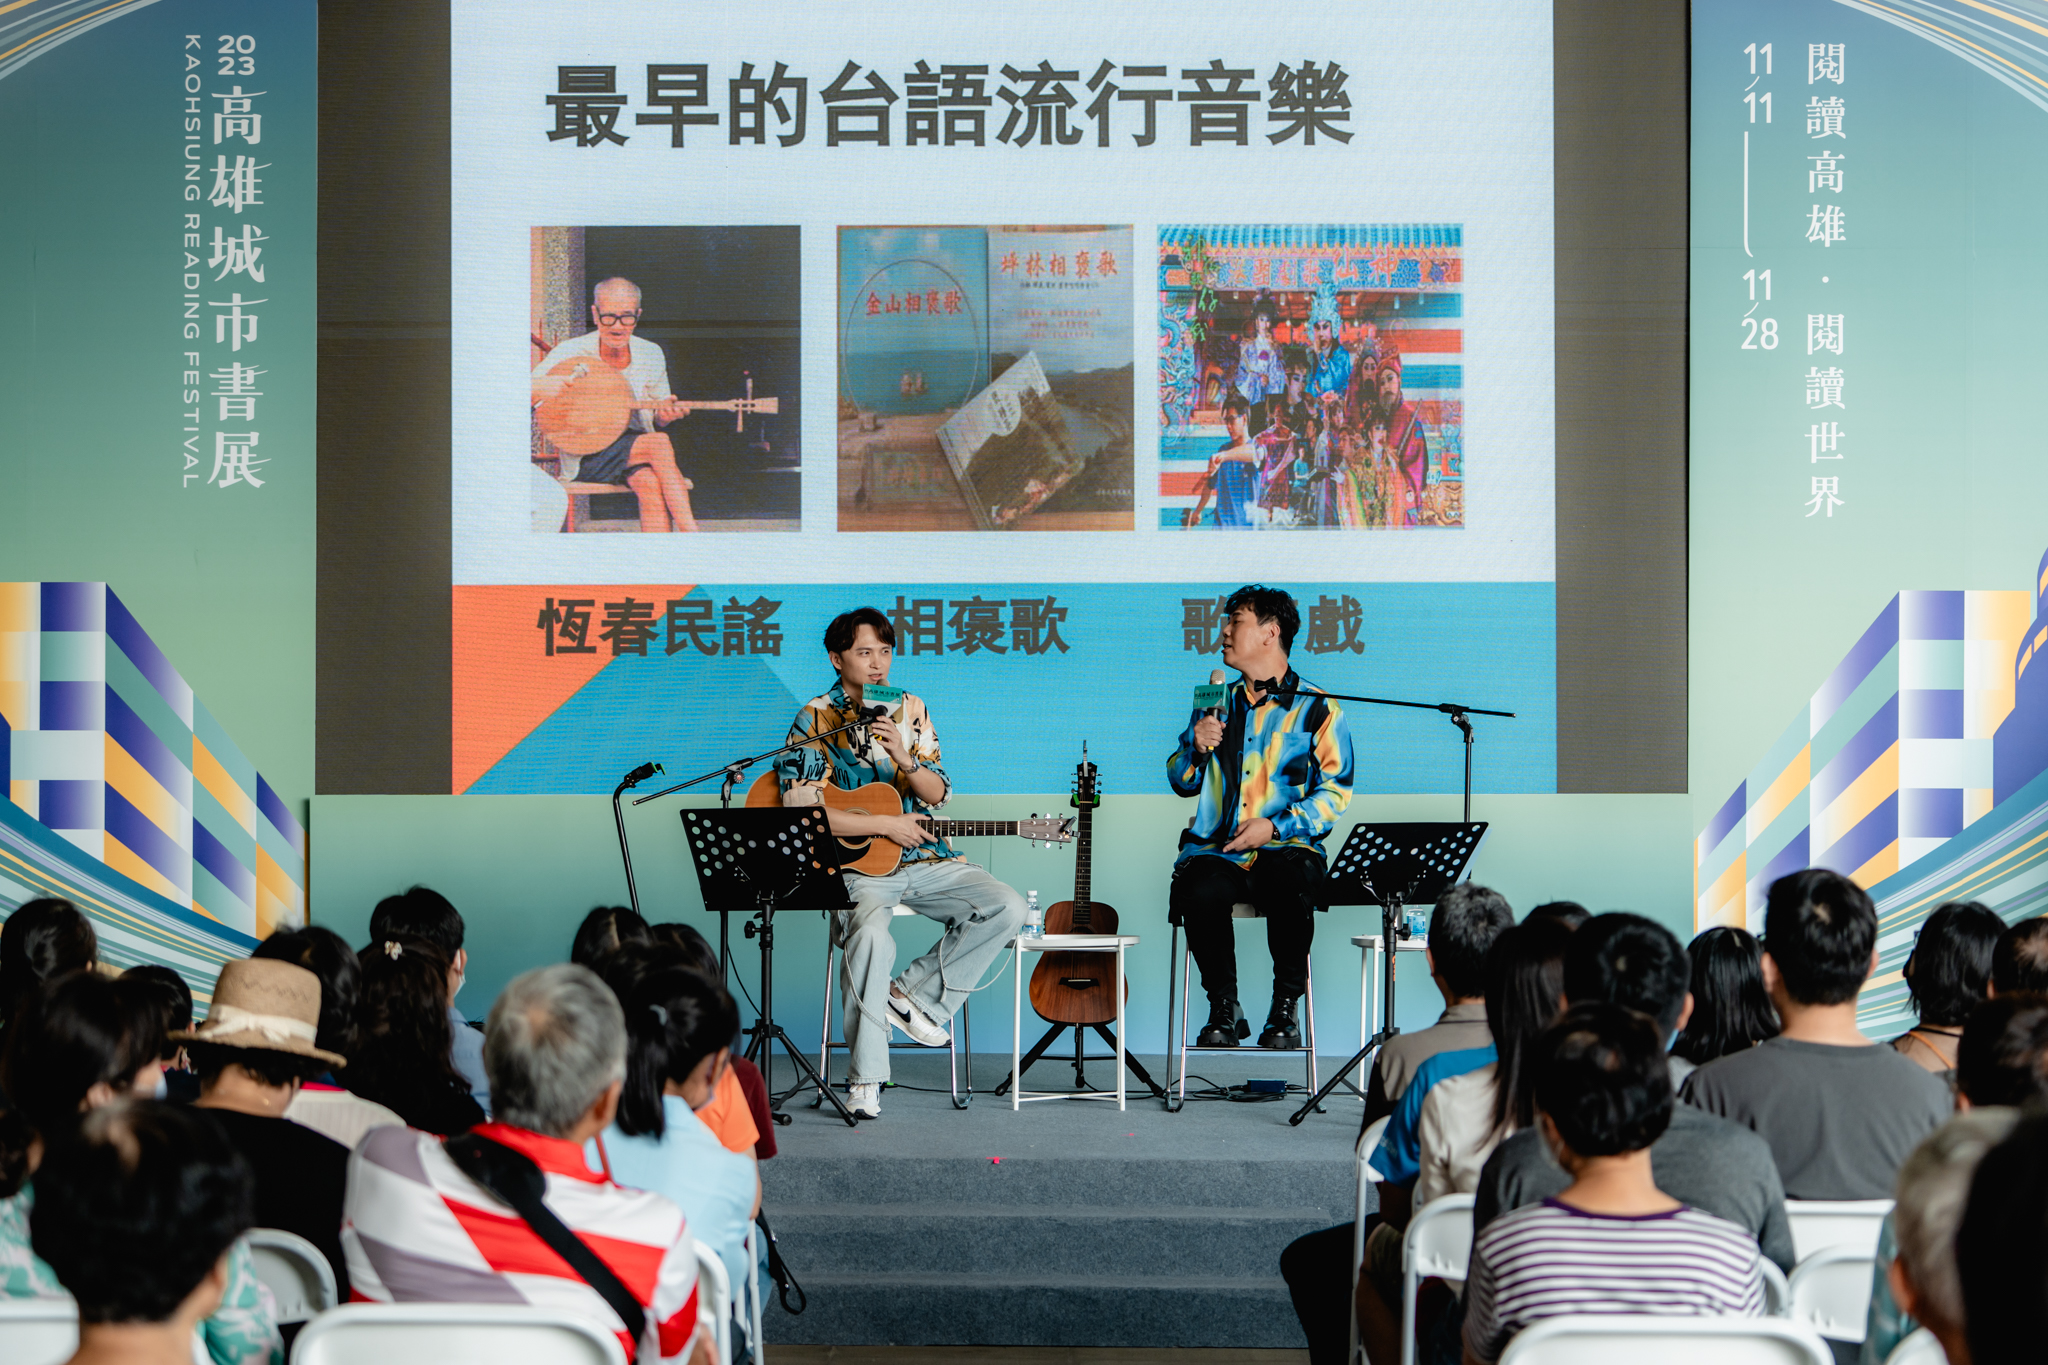 金曲歌王陳建瑋及邵大倫帶來的台語歌謠彈唱表演。